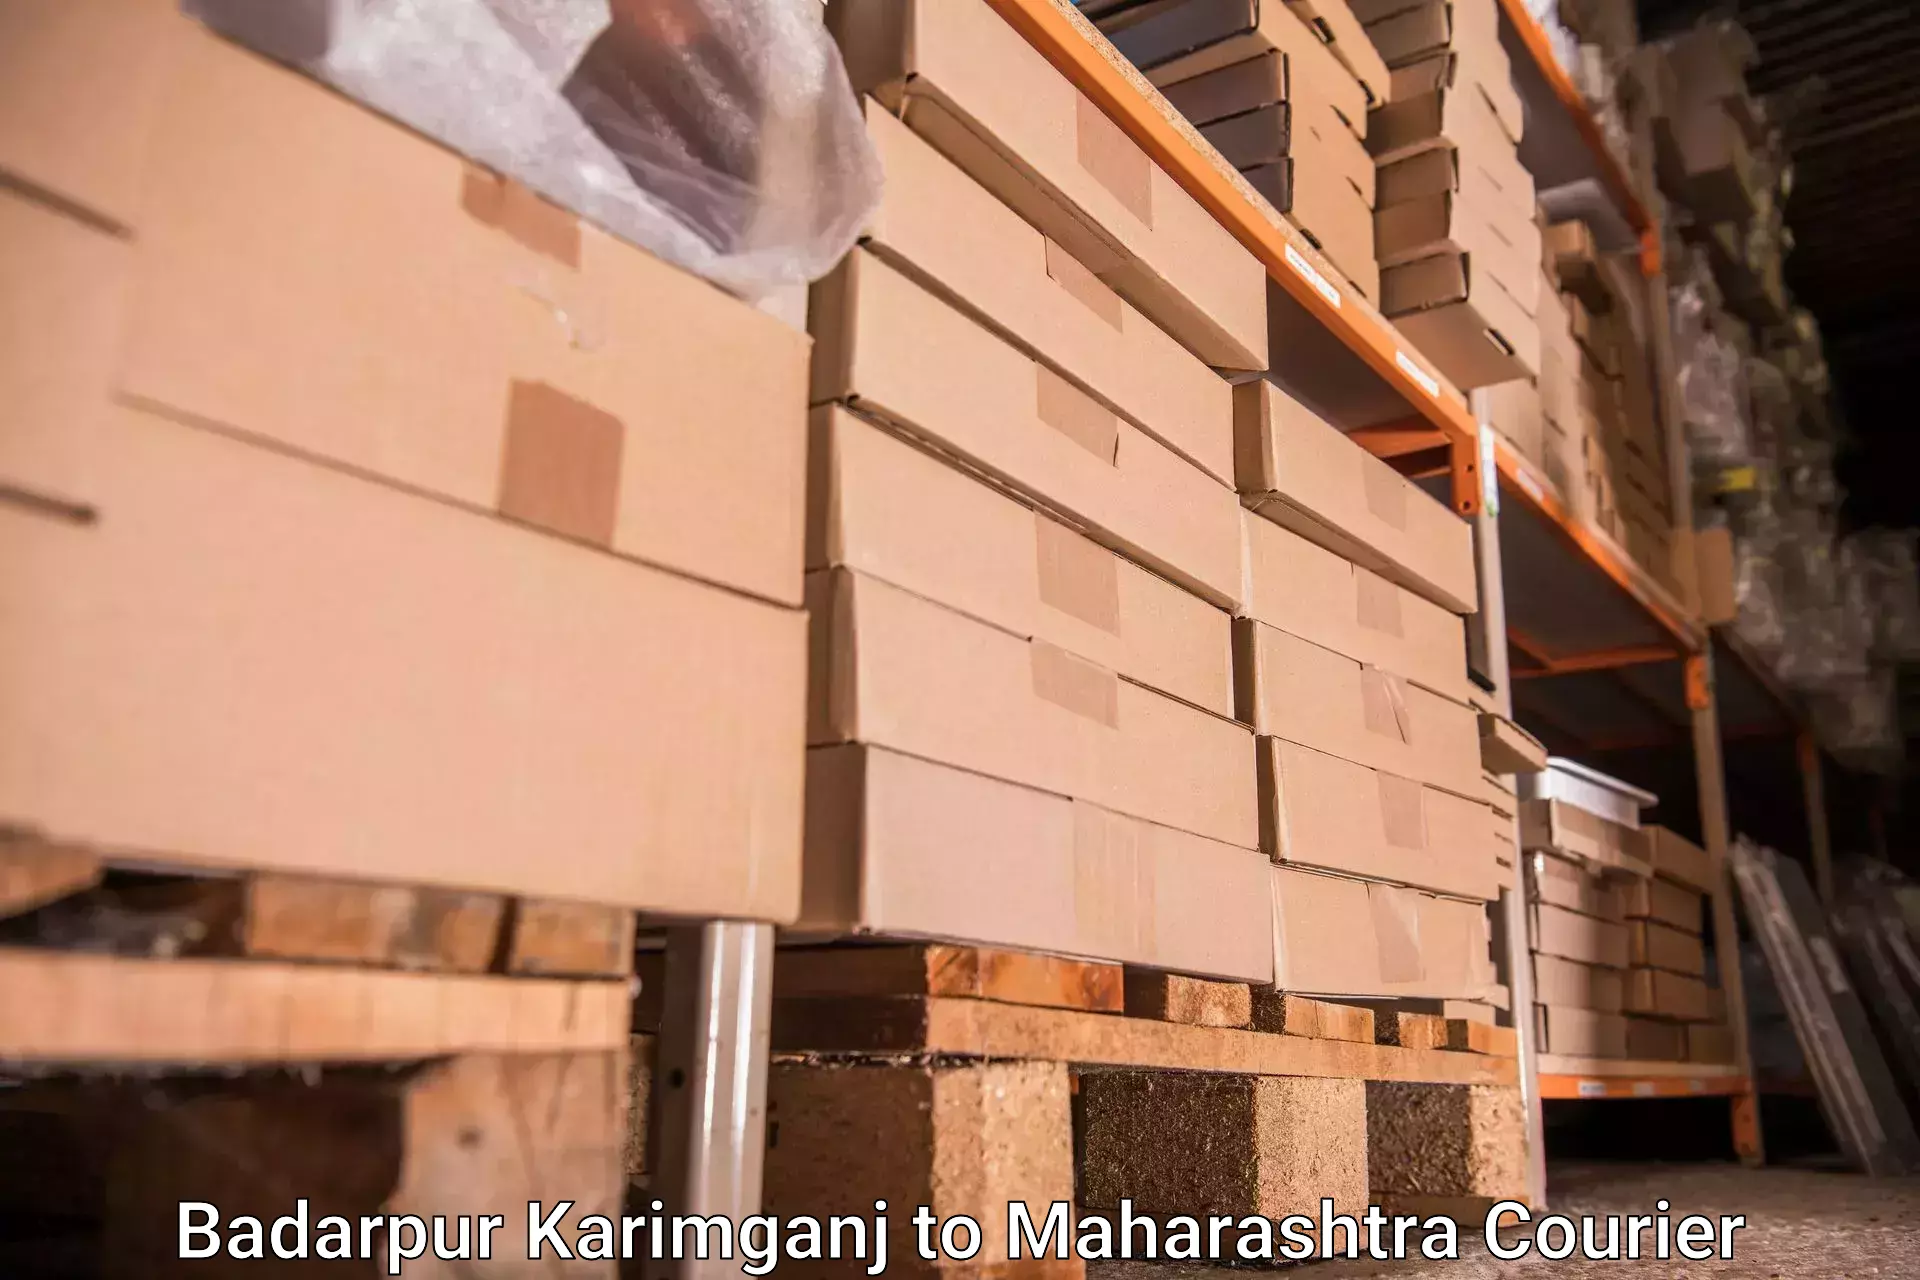 Reliable baggage delivery Badarpur Karimganj to Mahur